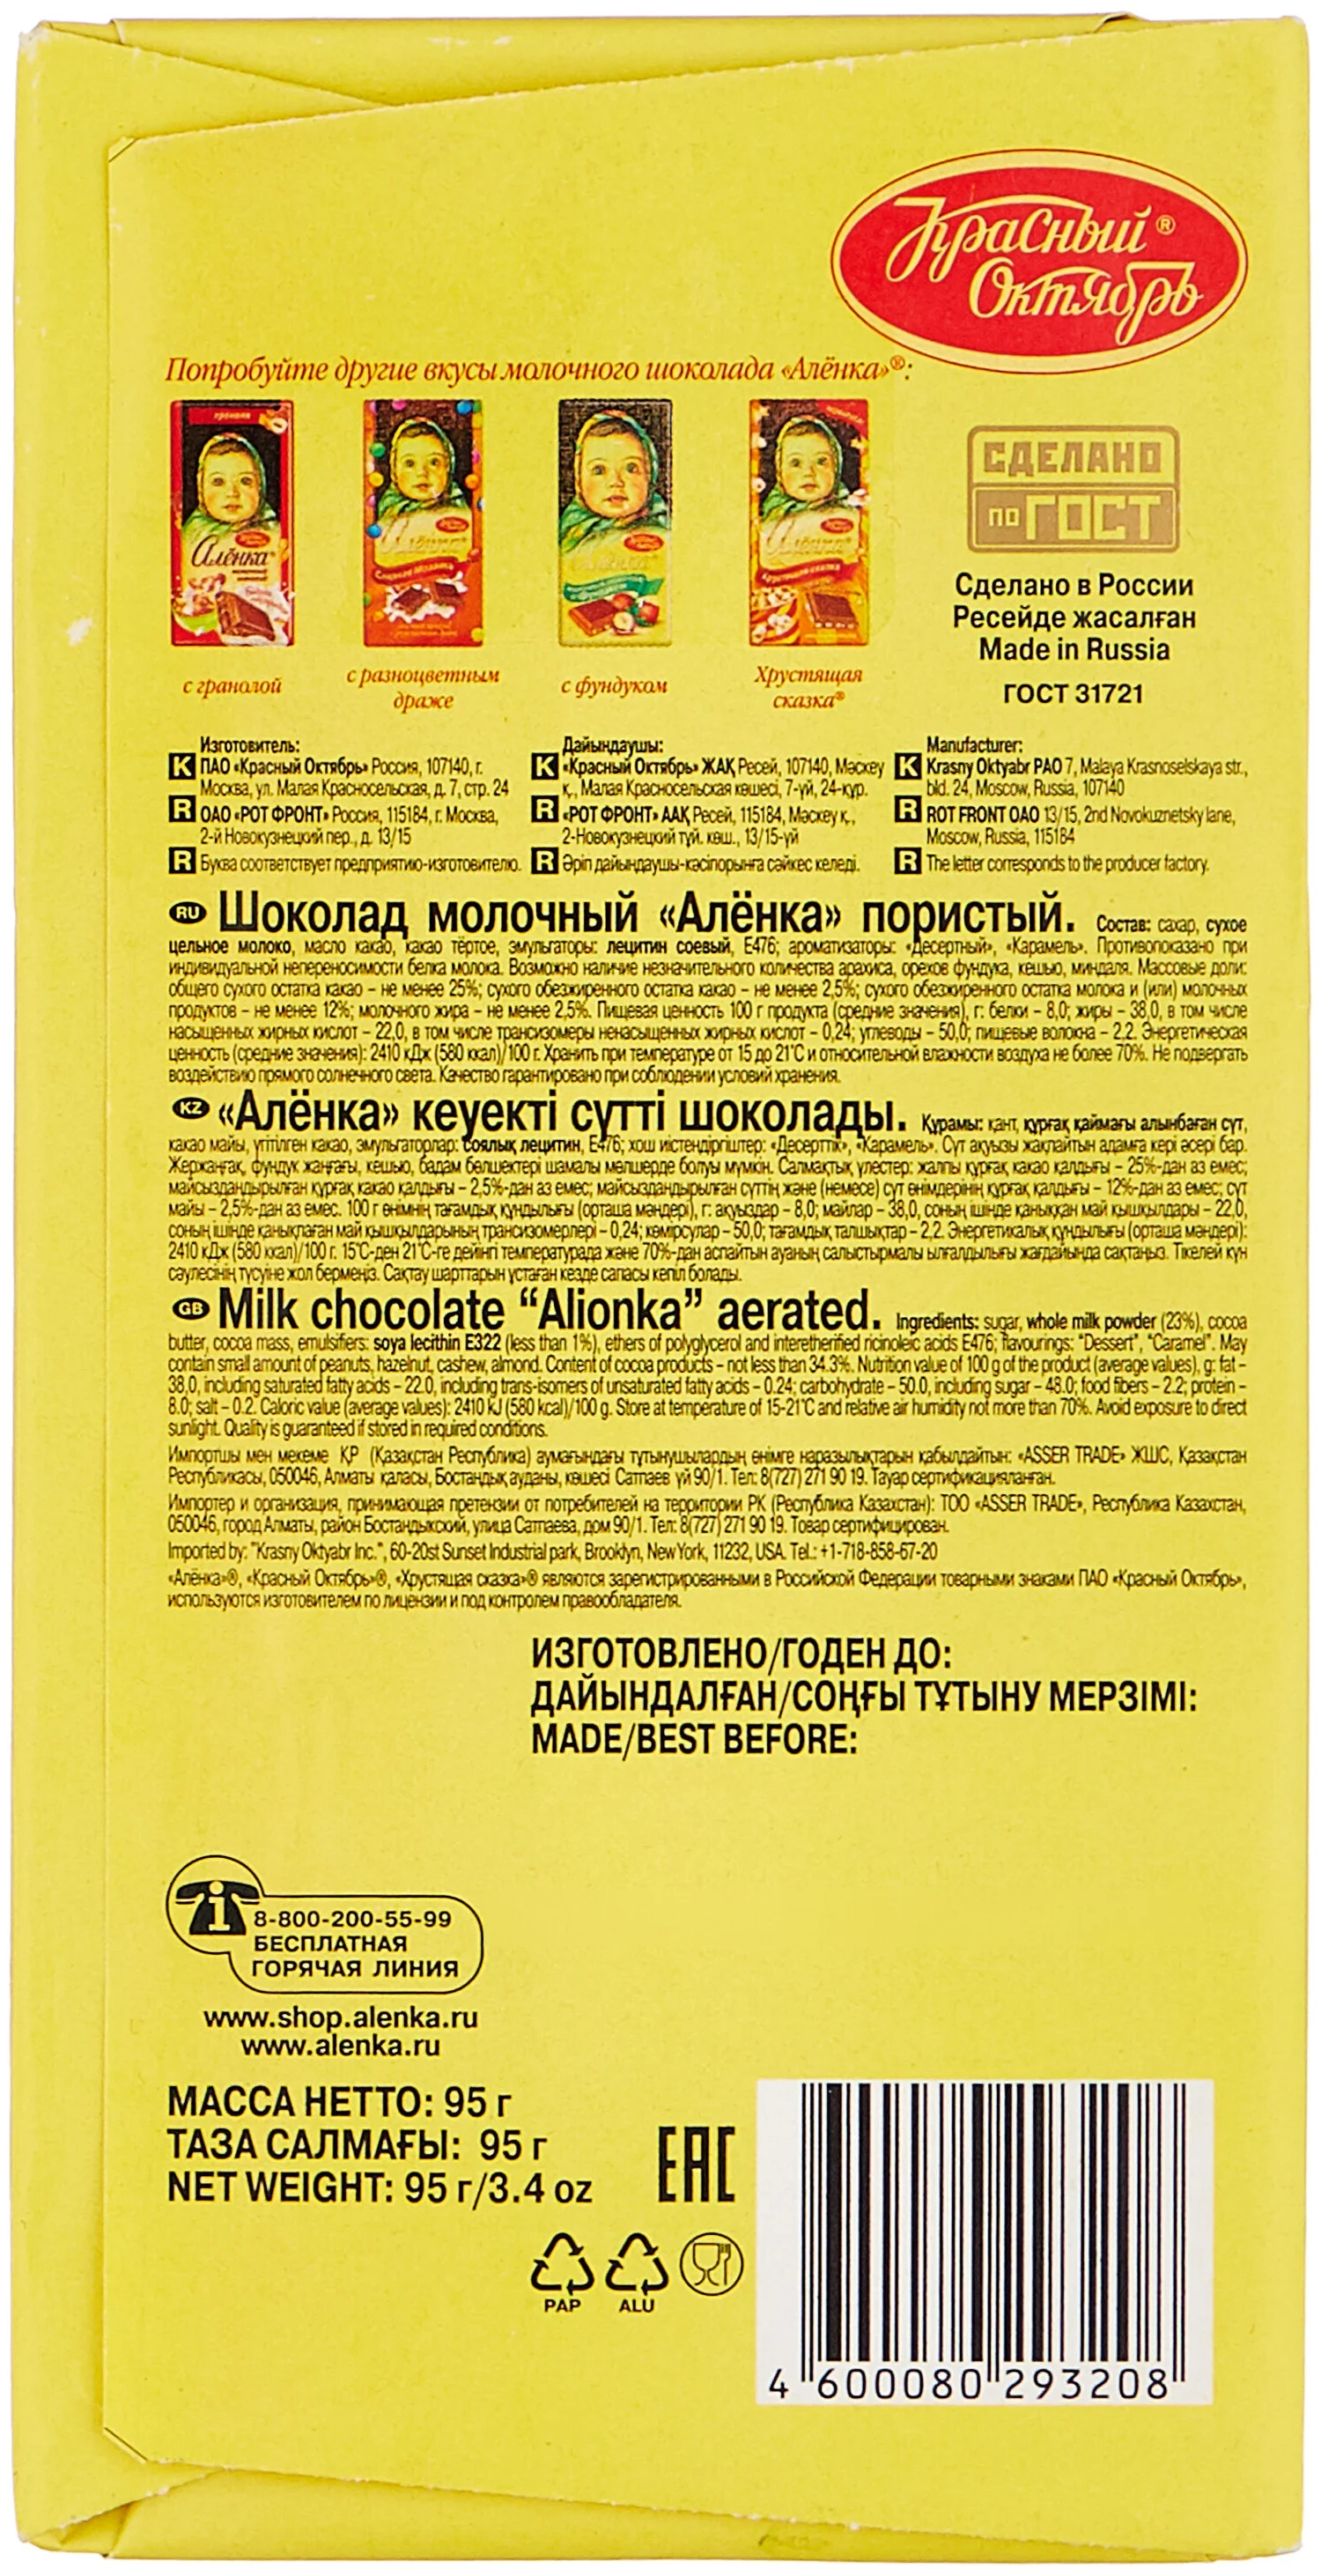 Алёнка "Пористый" - содержание какао: 25 %